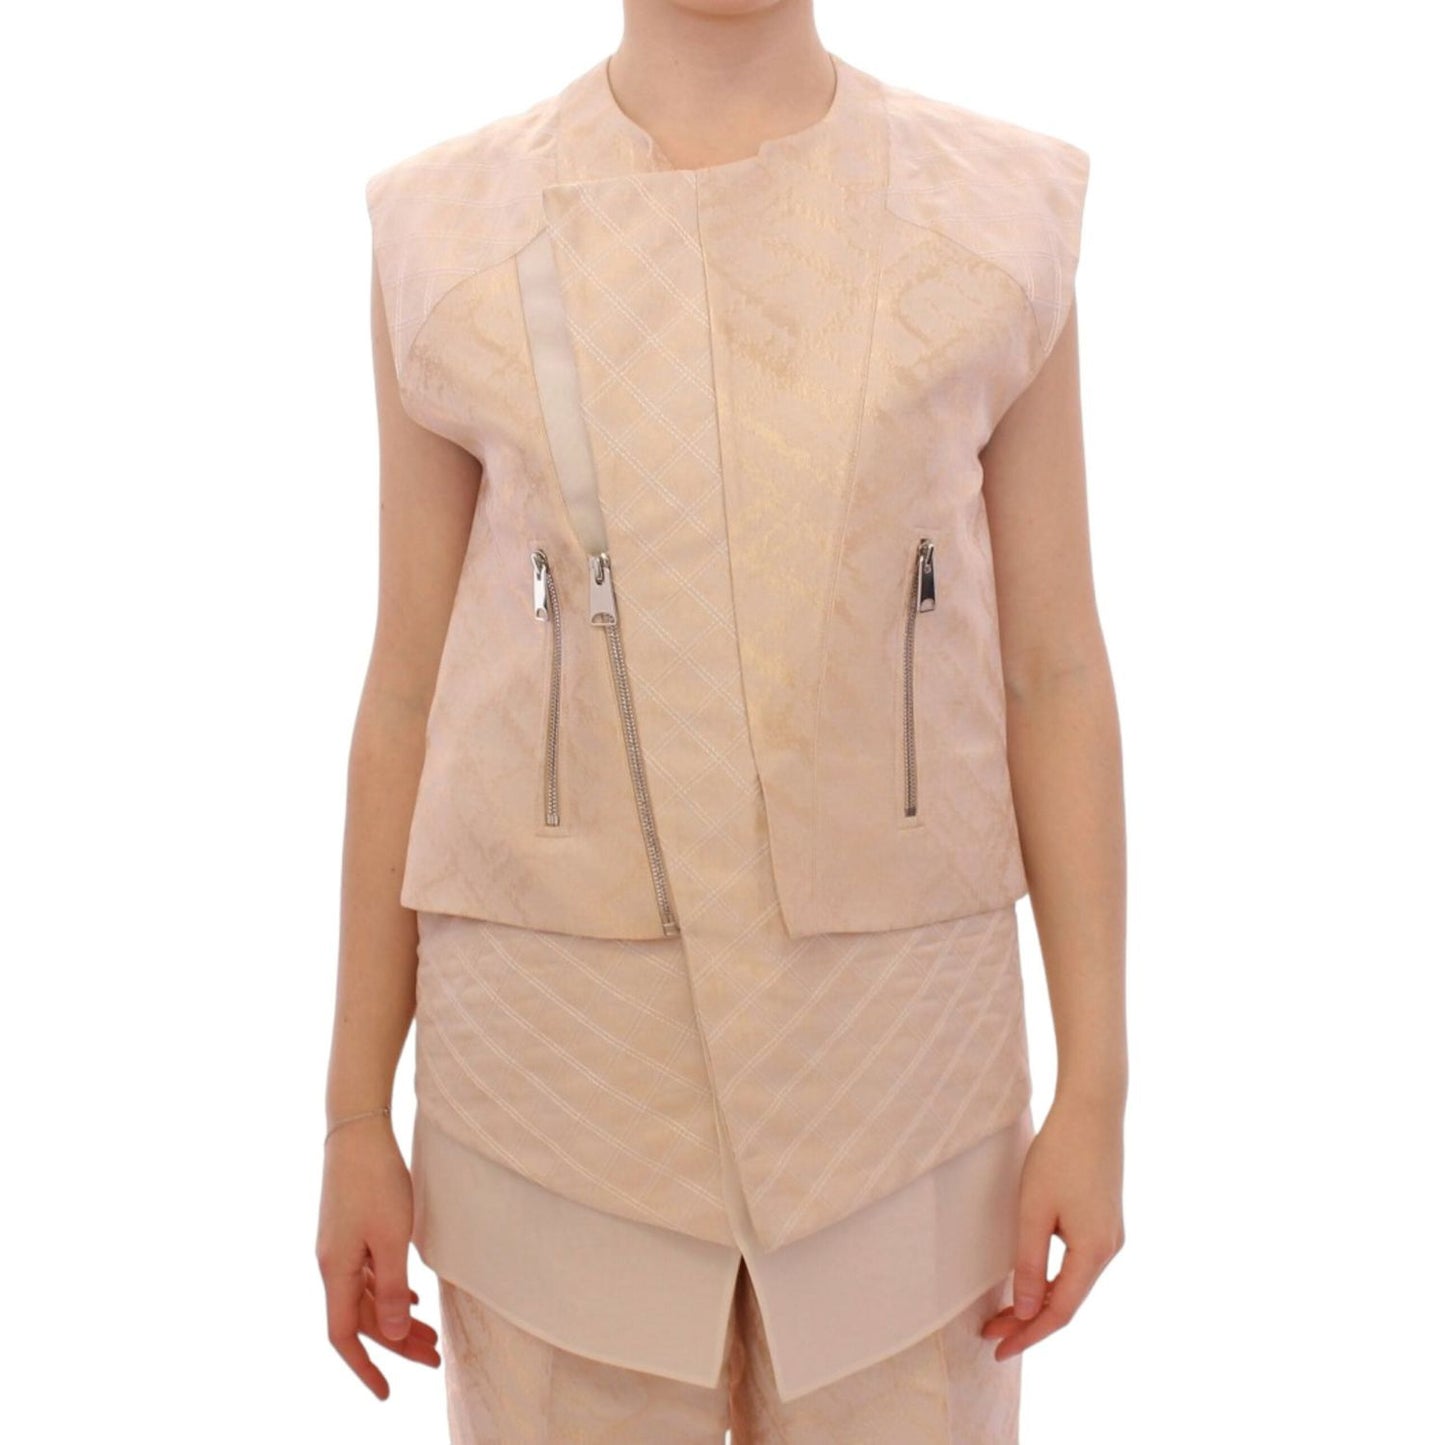 Zeyneptosun Exquisite Beige Brocade Sleeveless Jacket Vest Coats & Jackets beige-brocade-sleeveless-jacket